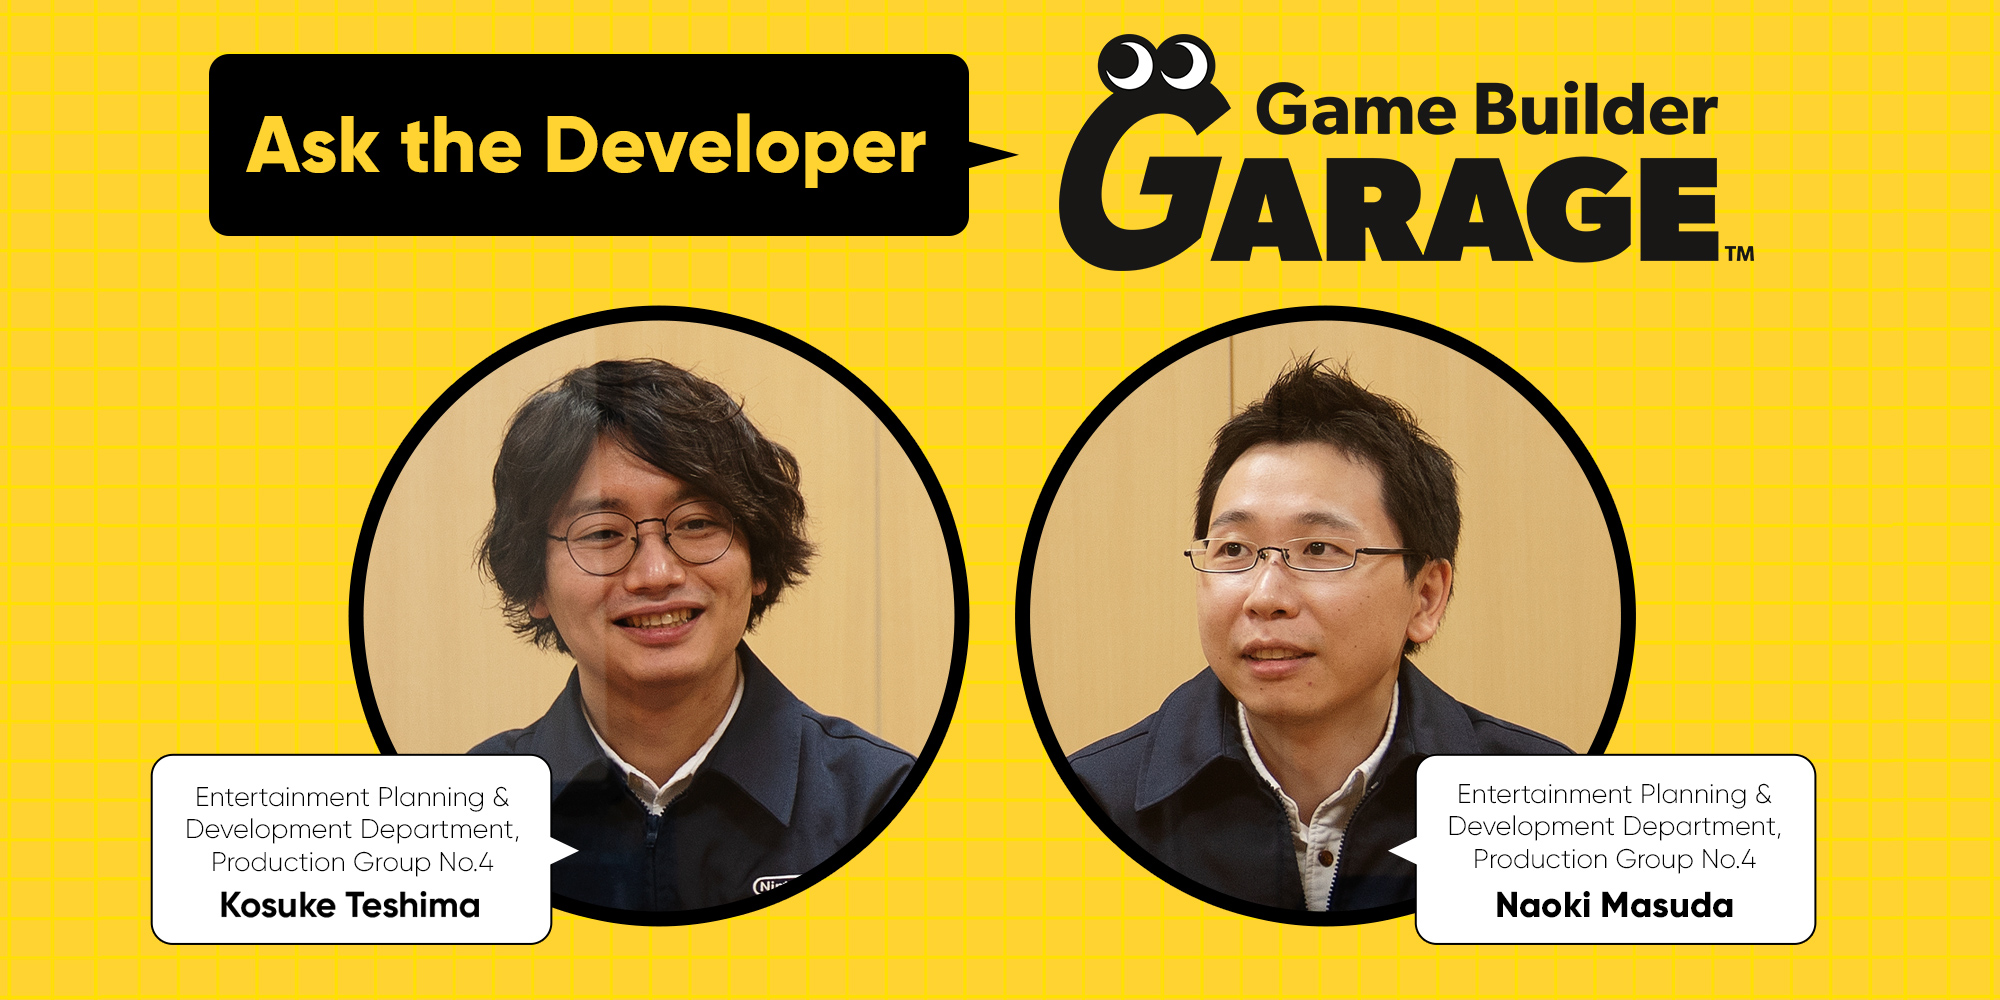 Ask the Developer Vol. 1, Game Builder Garage